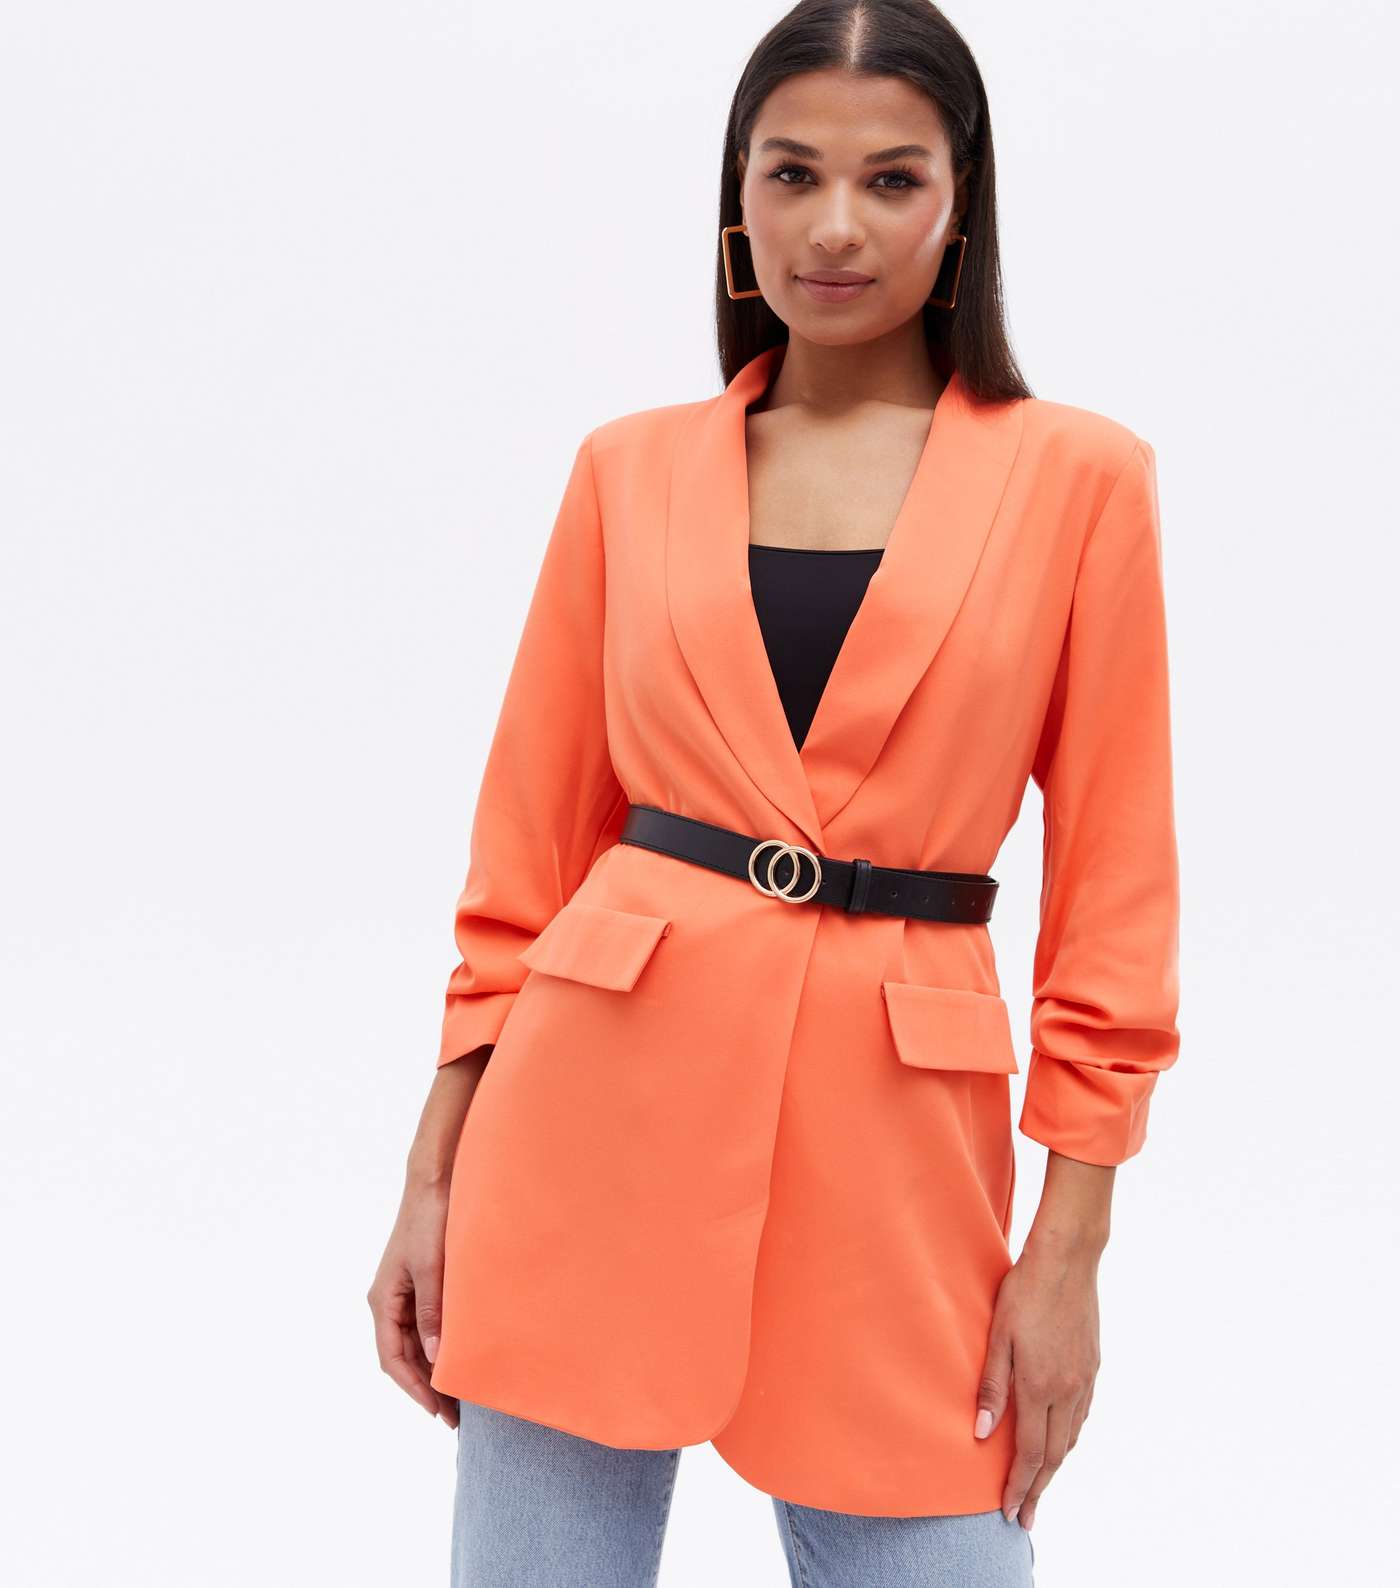 Cameo Rose Bright Orange Ruched Sleeve Long Blazer Image 2